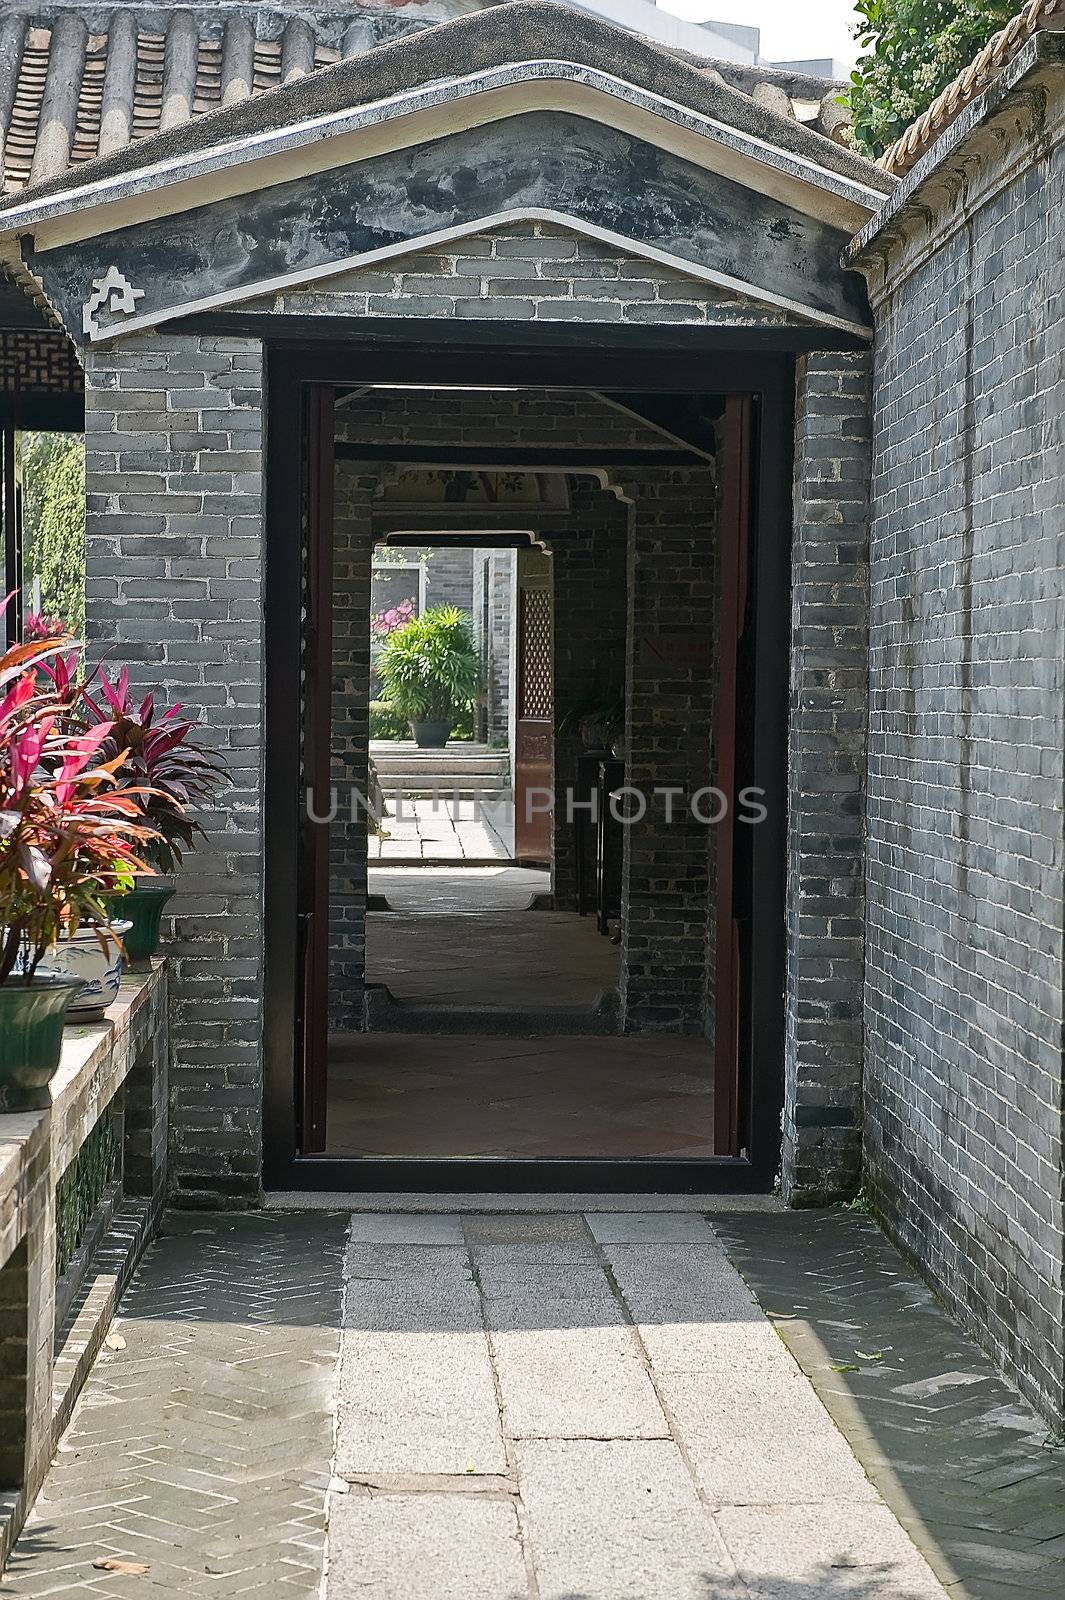 Pathway Qinghui garden by Marcus